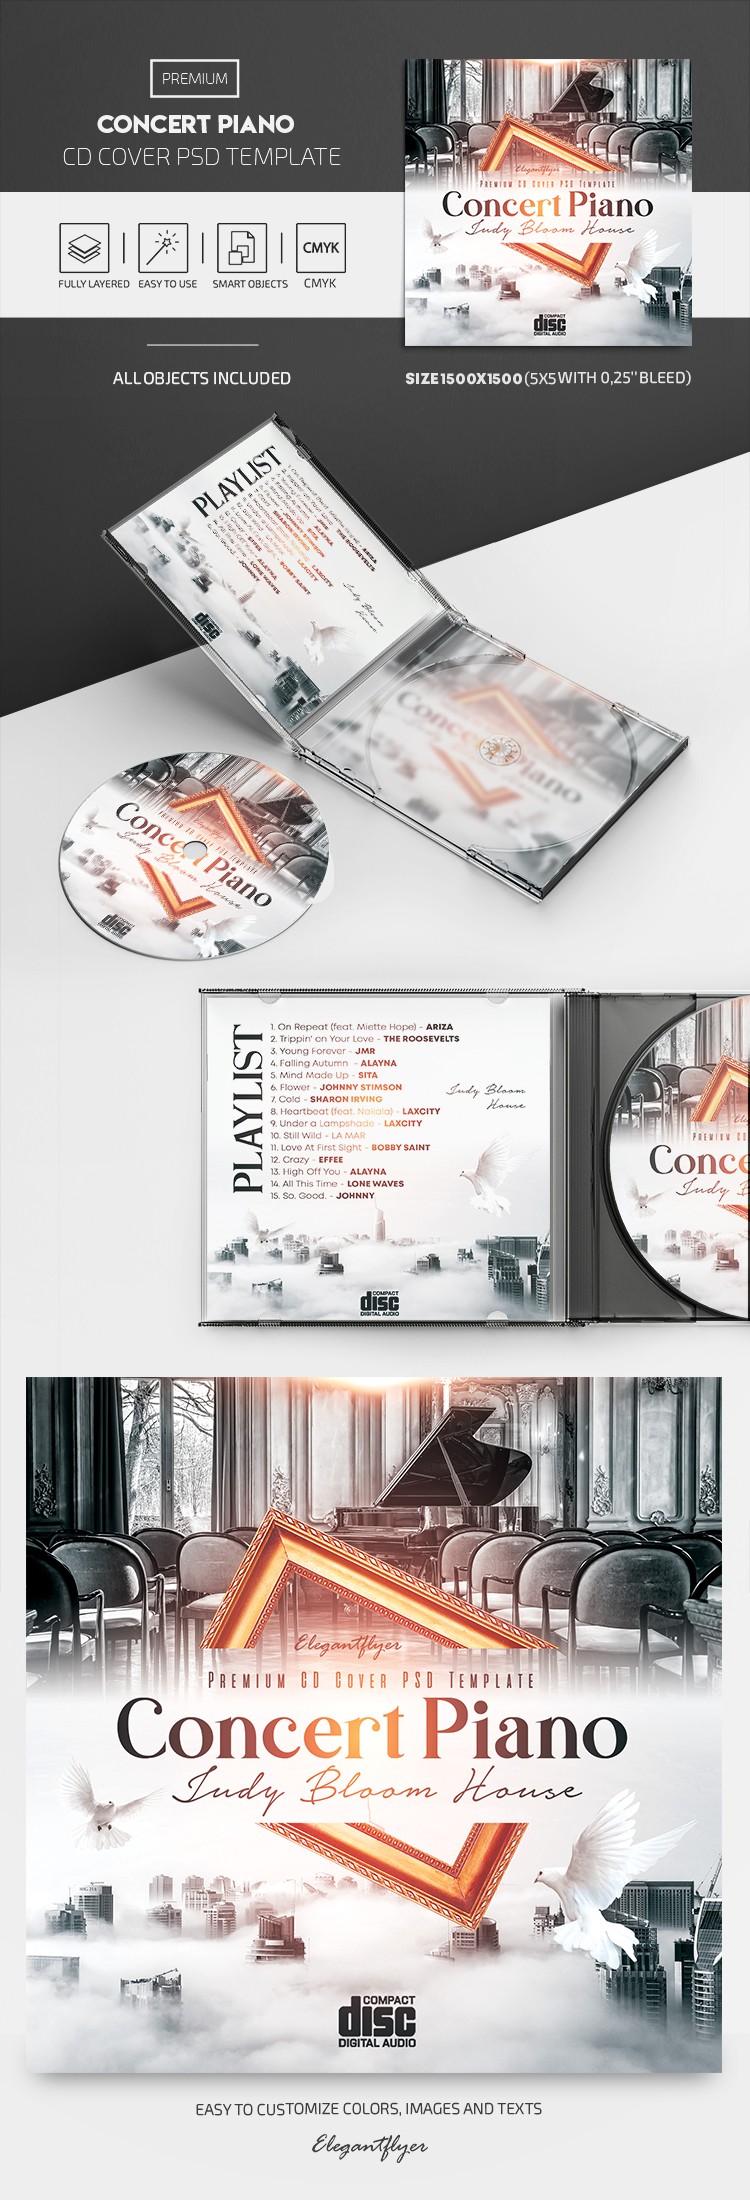 Portada del CD de Piano de Concierto by ElegantFlyer